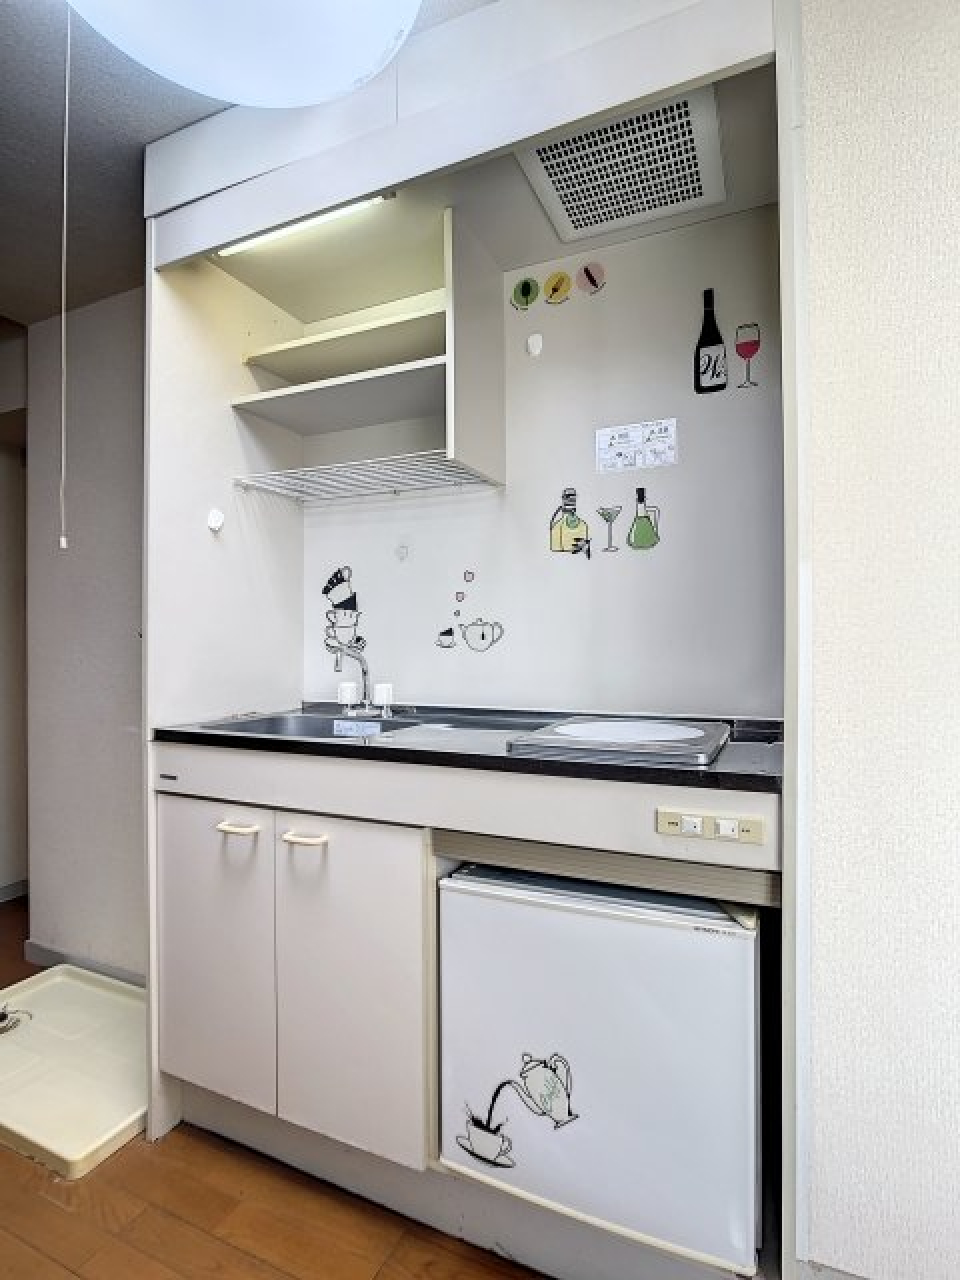 キッチンにはミニ冷蔵庫が設置されており、かわいいステッカーで彩られています。